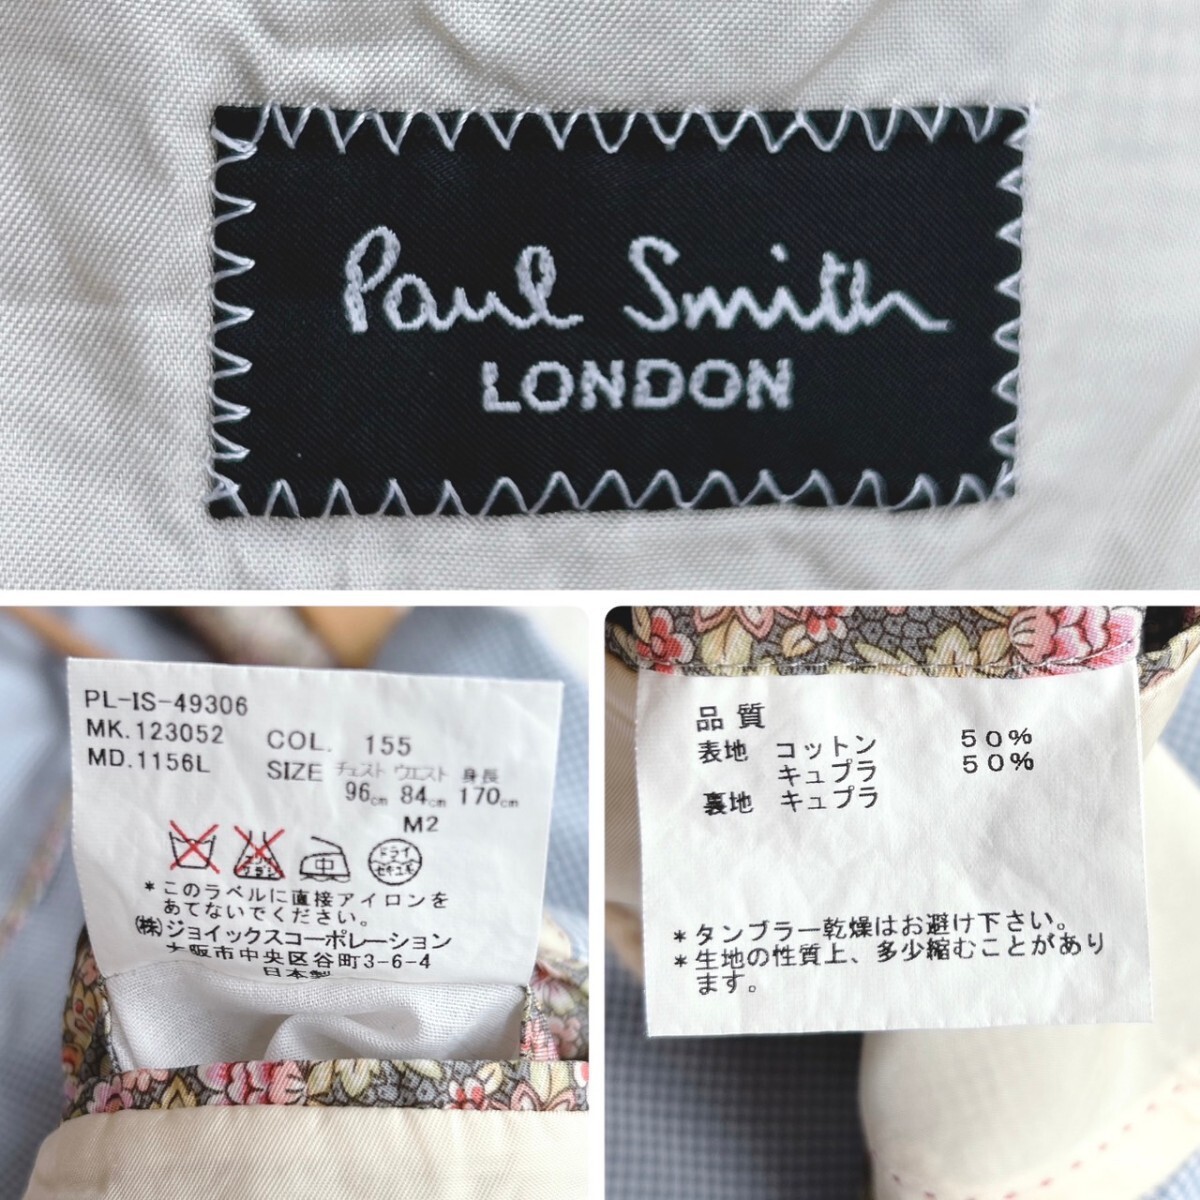 【英国紳士の嗜み】Paul Smith LONDON ポールスミス テーラードジャケット ライトブルー 裏地花柄 M2 コットン素材 チェック 春夏 アンコンの画像8